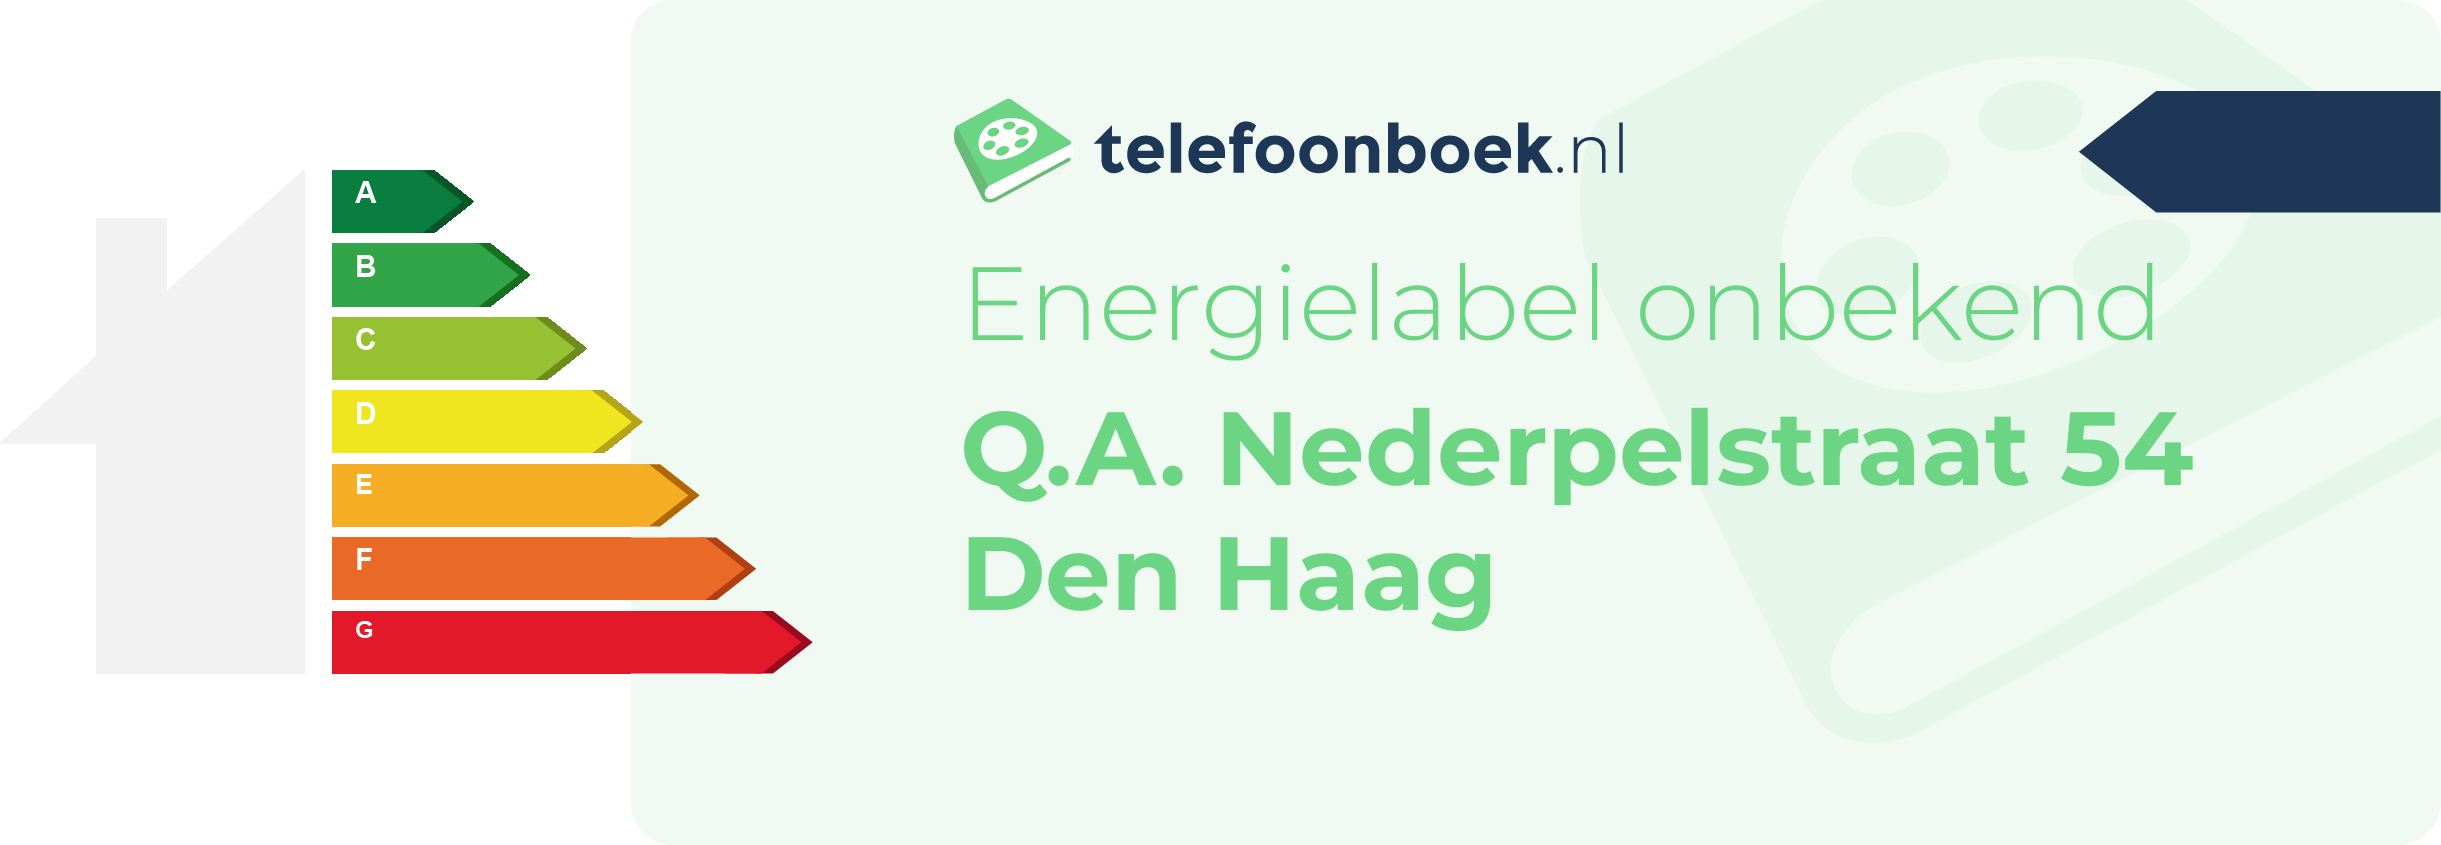 Energielabel Q.A. Nederpelstraat 54 Den Haag